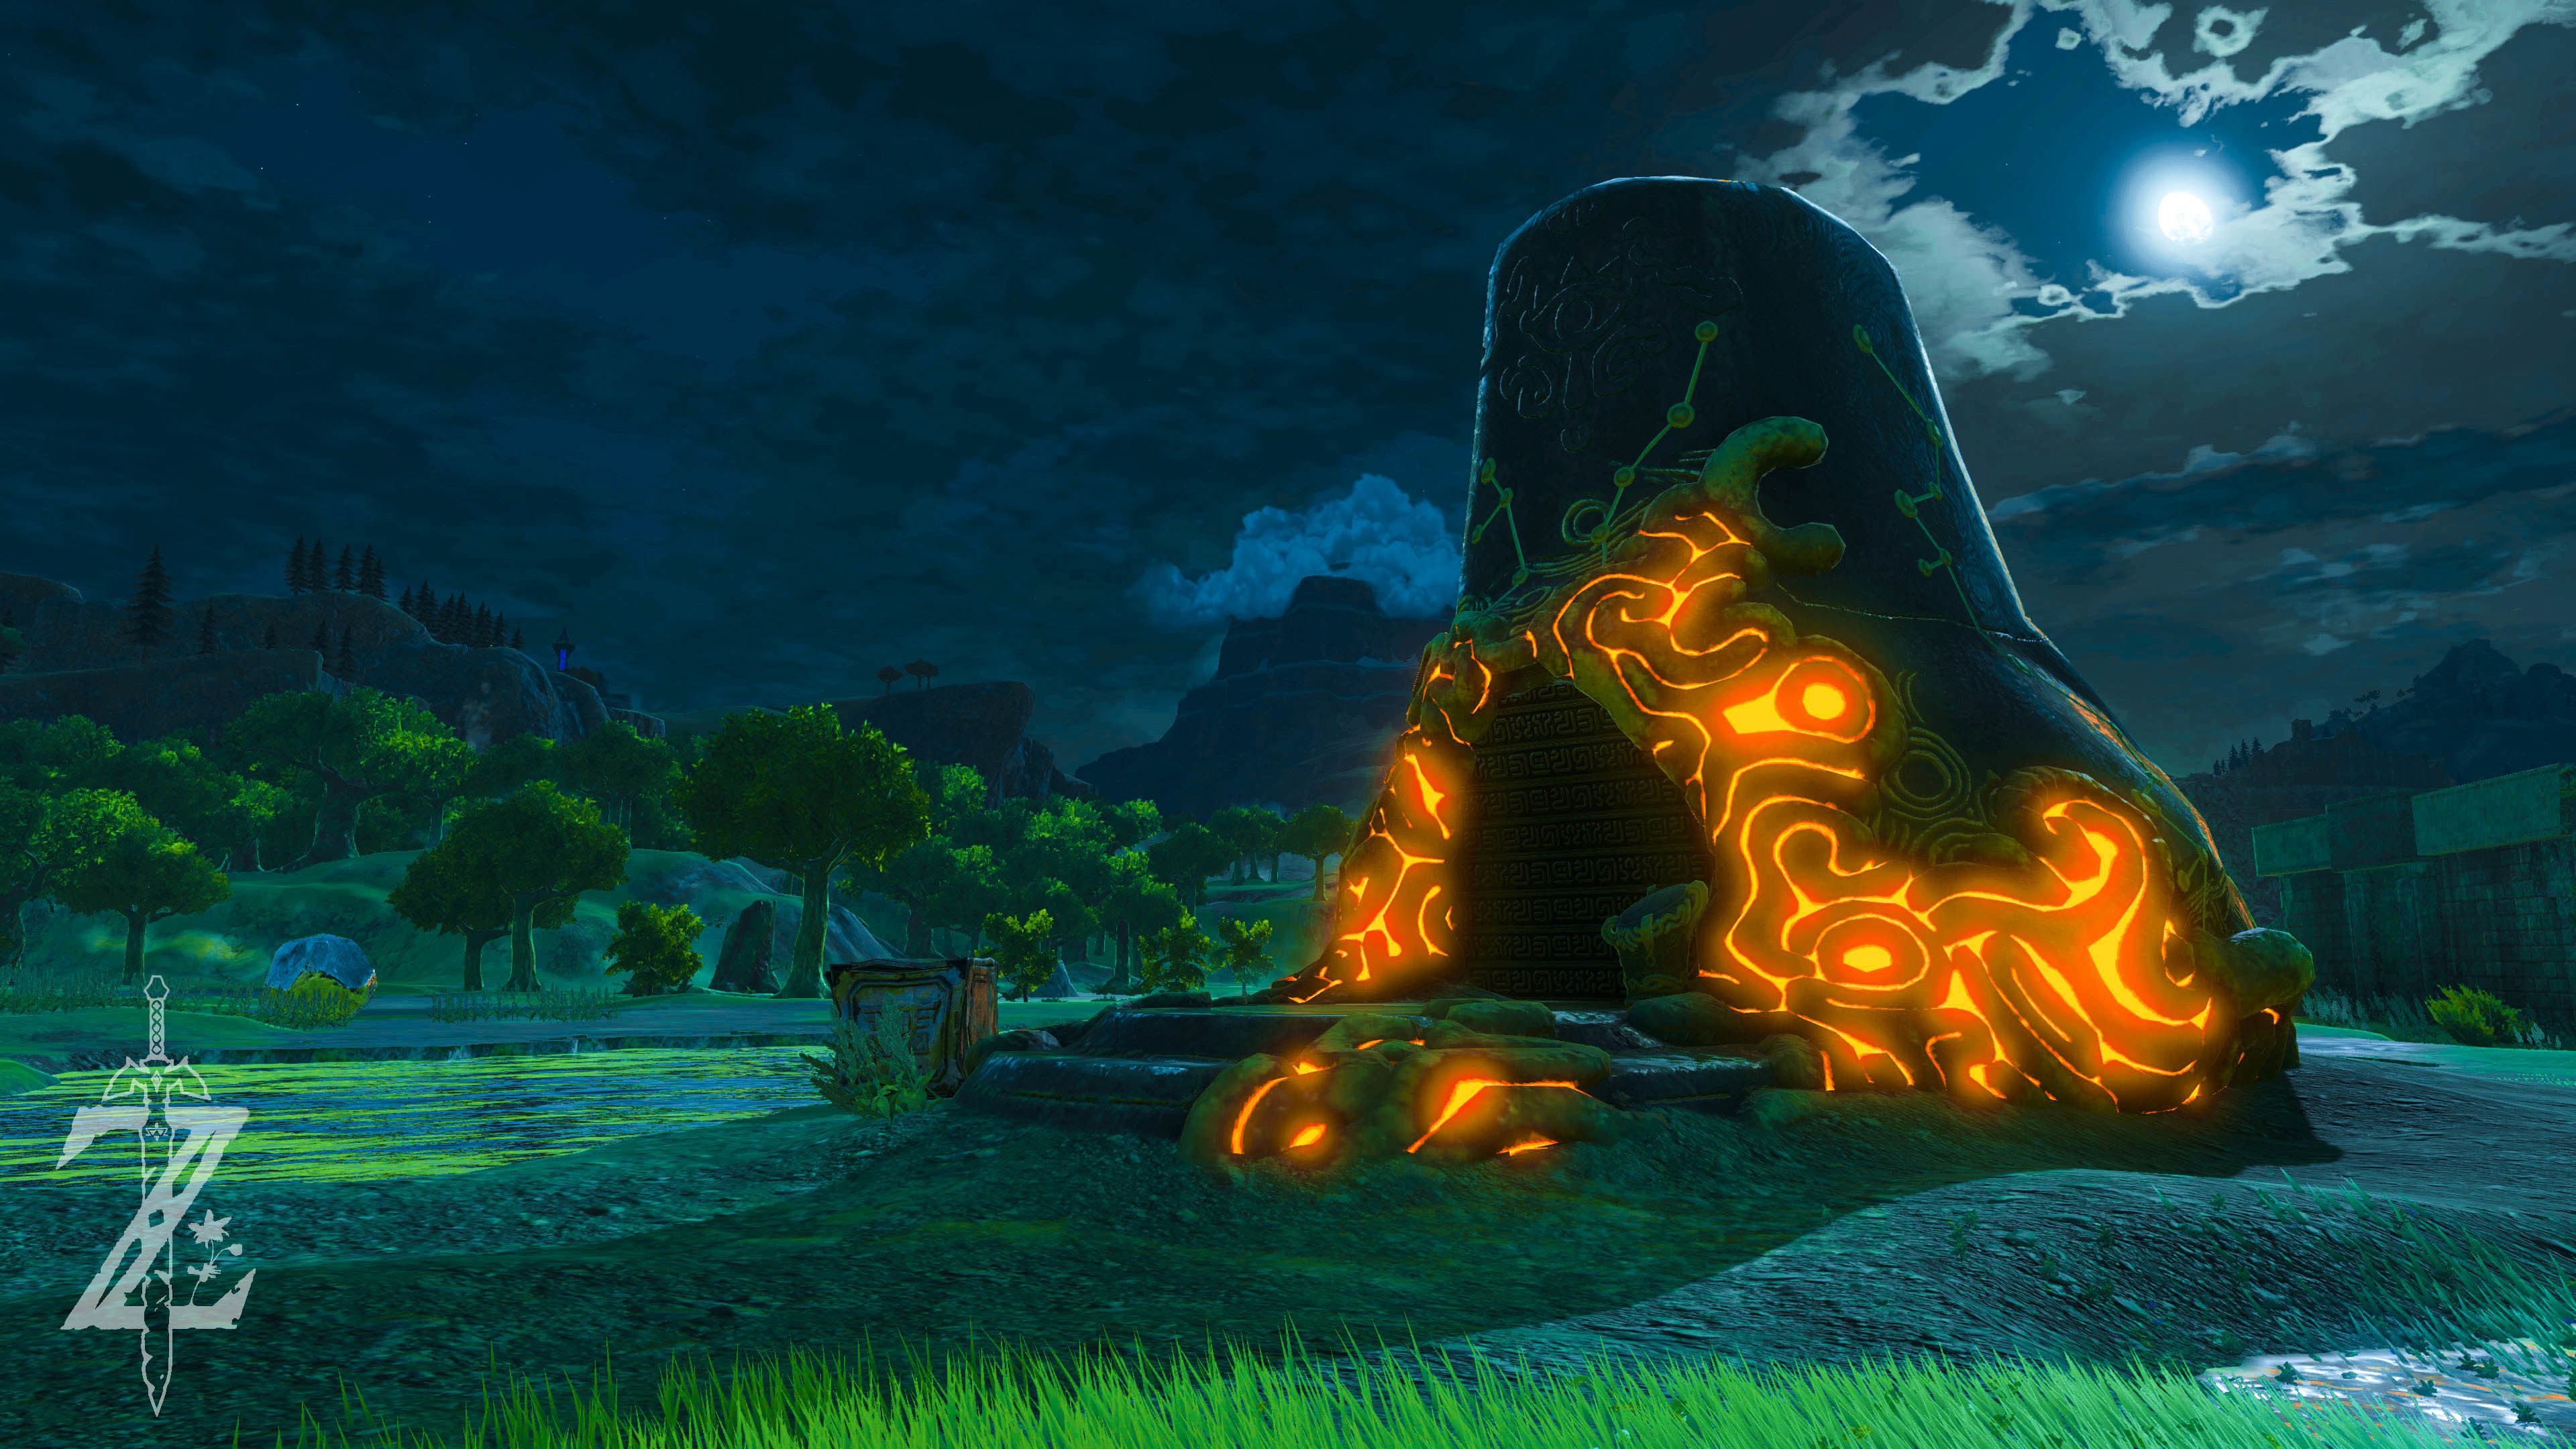 The Legend Of Zelda - Zelda Breath Of The Wild Night , HD Wallpaper & Backgrounds